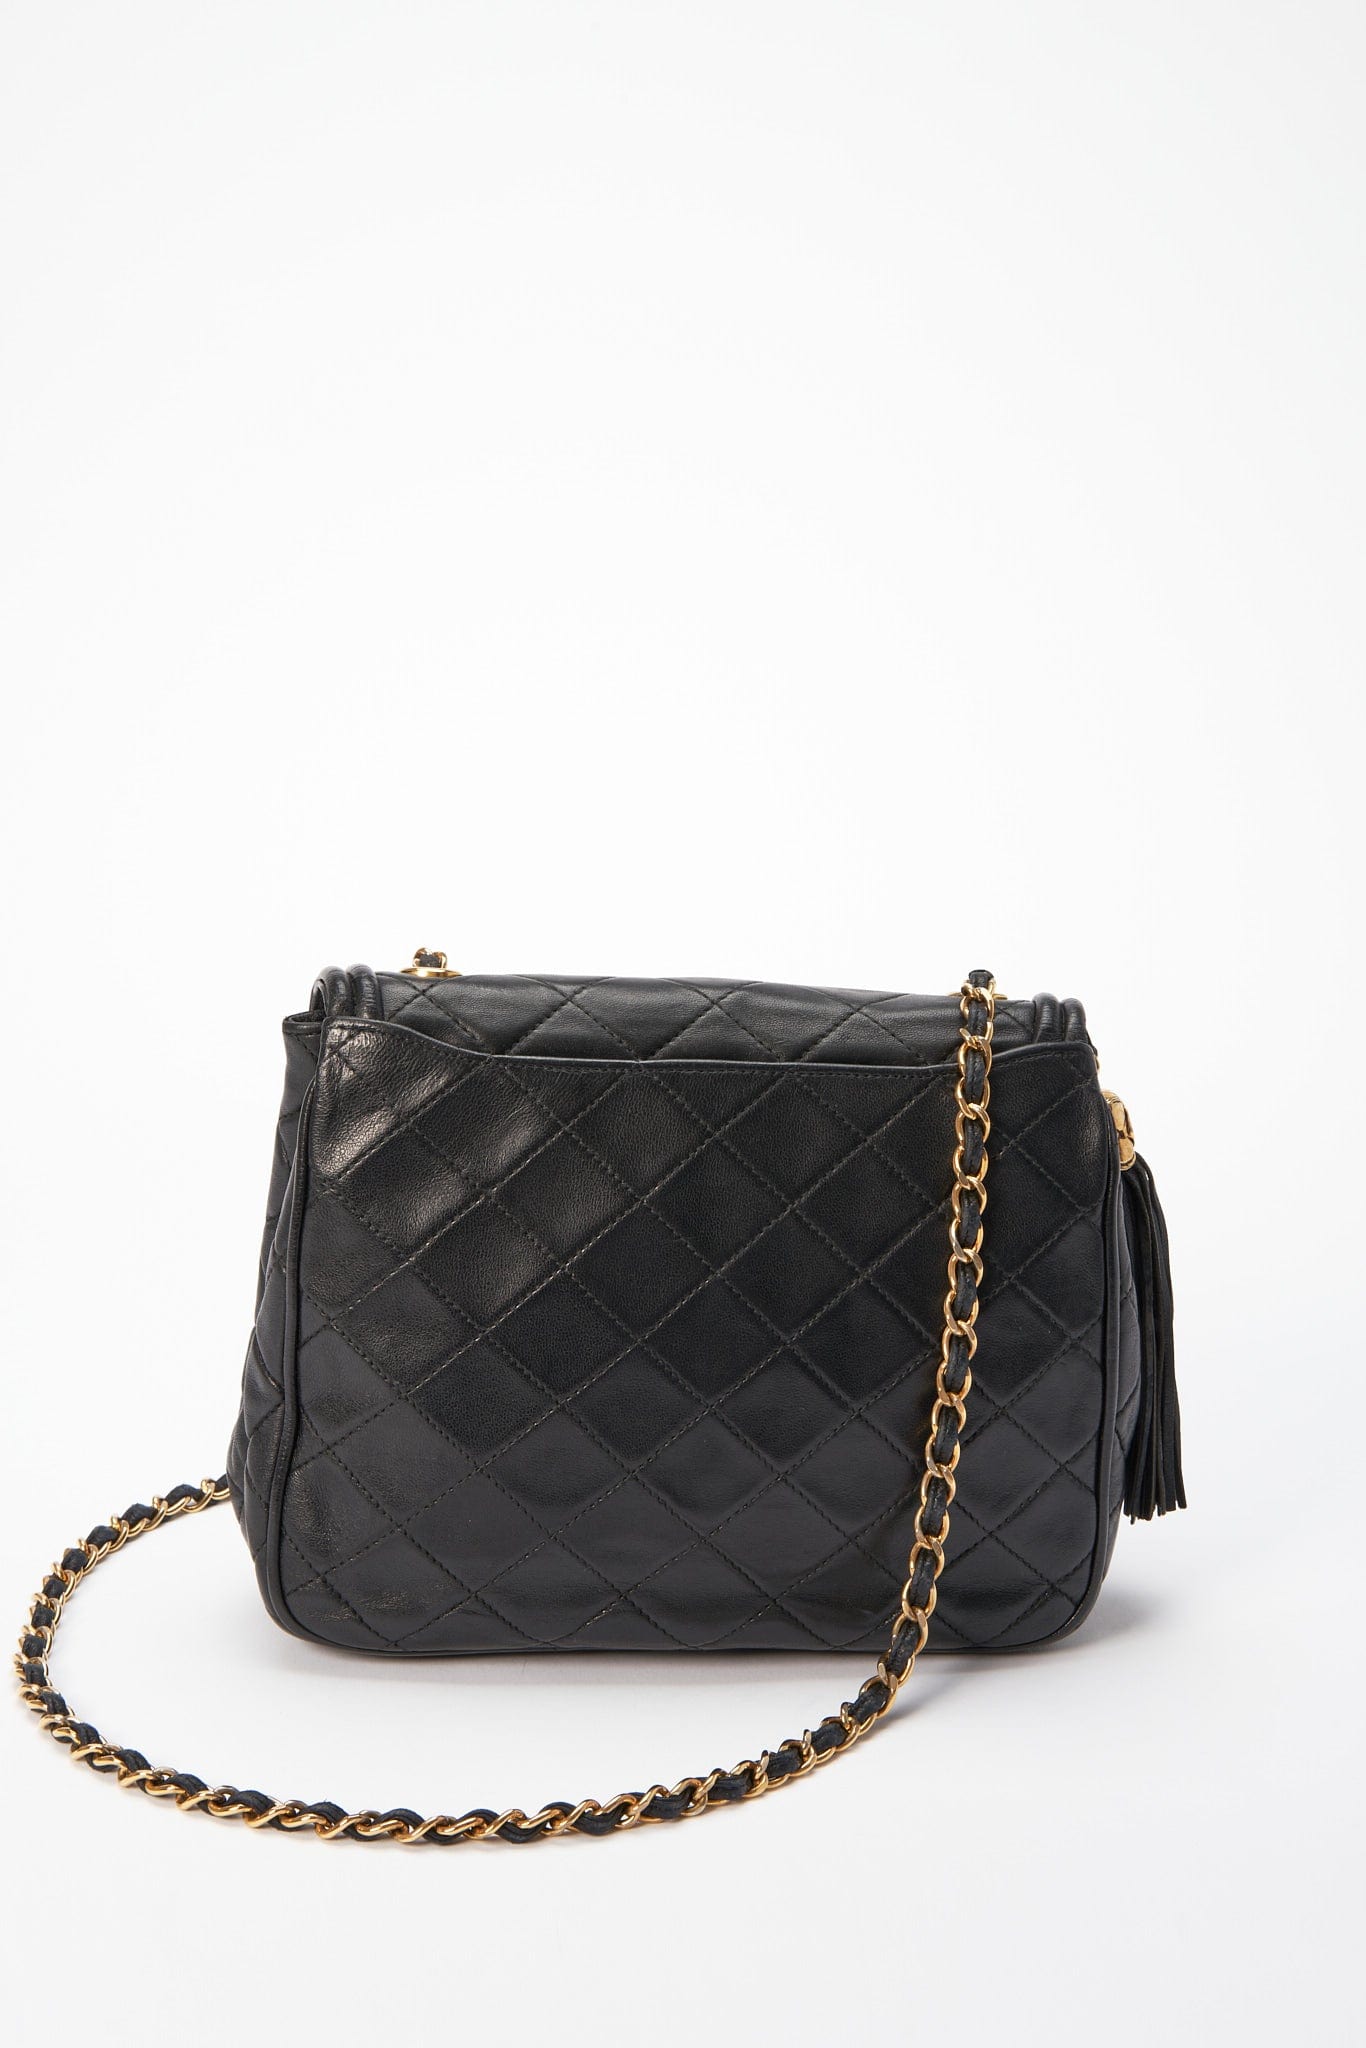 Handbags Chanel Chanel Vintage Black / Gold Tassel Detail CC Logo Embossed Suede Leather Handbag